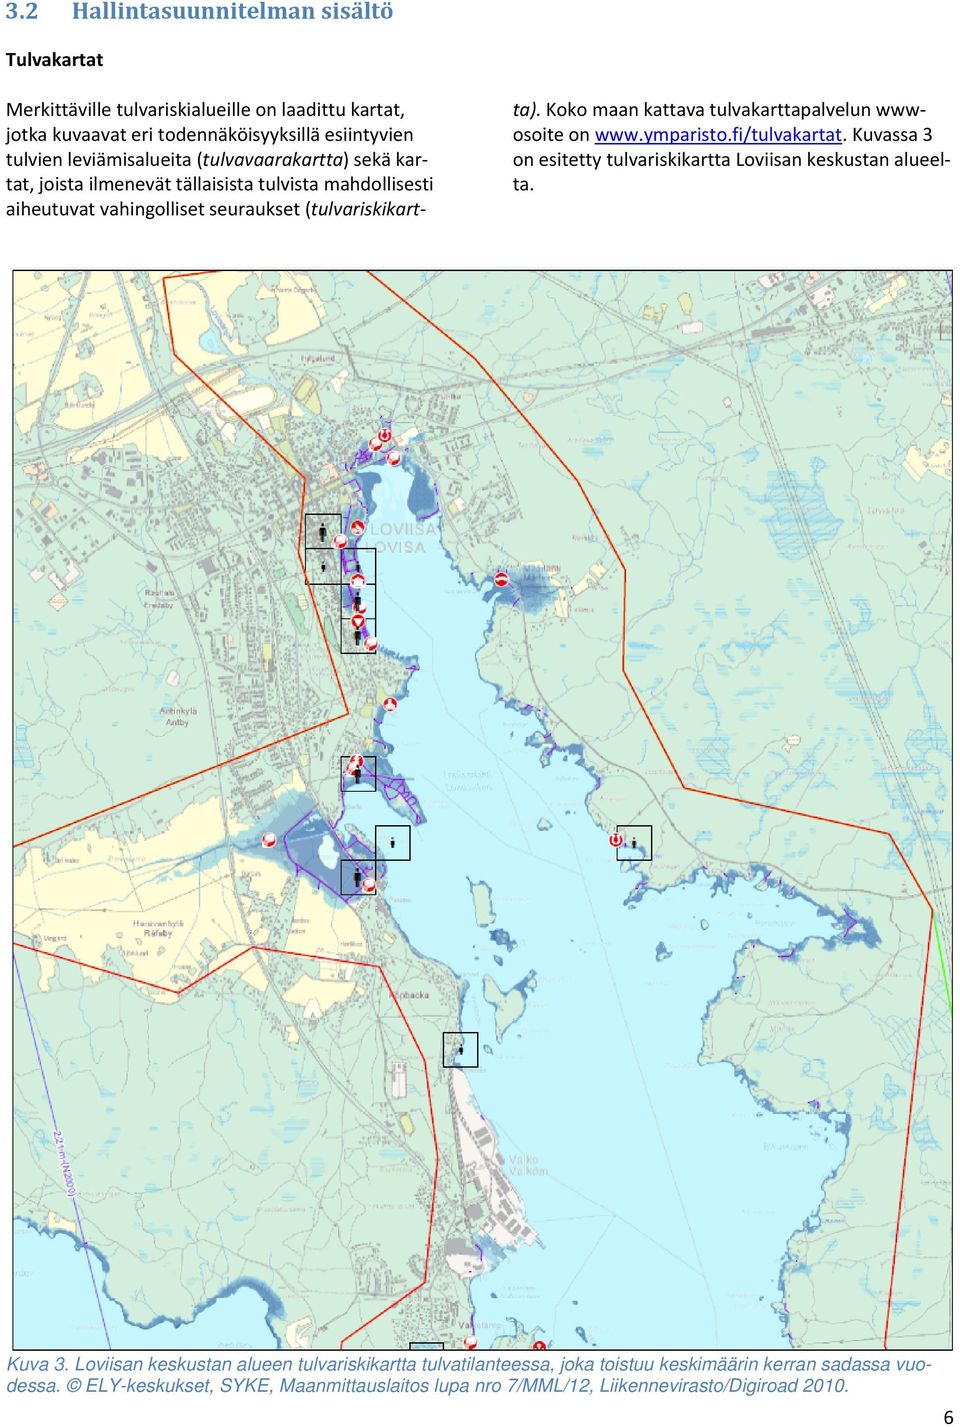 Koko maan kattava tulvakarttapalvelun wwwosoite on www.ymparisto.fi/tulvakartat. Kuvassa 3 on esitetty tulvariskikartta Loviisan keskustan alueelta. Kuva 3.